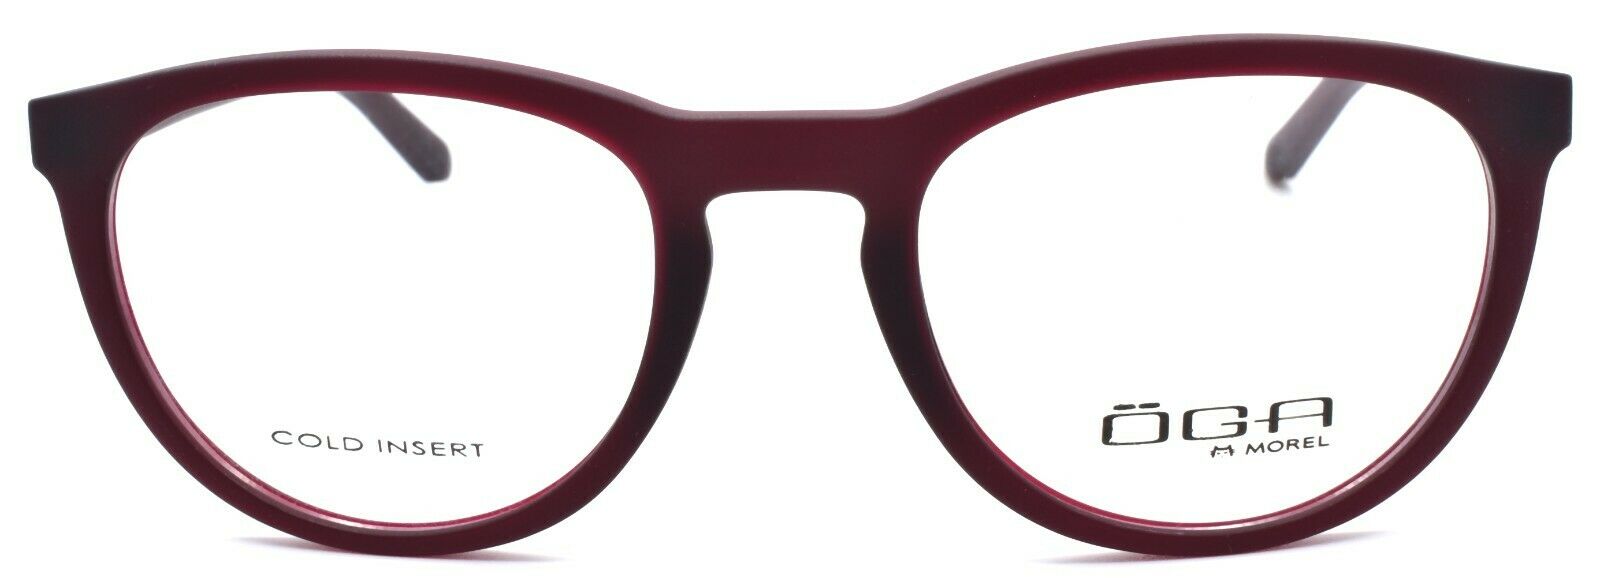 2-OGA by Morel 82040 RN022 Eyeglasses Frames 51-20-140 Red-3604770897678-IKSpecs